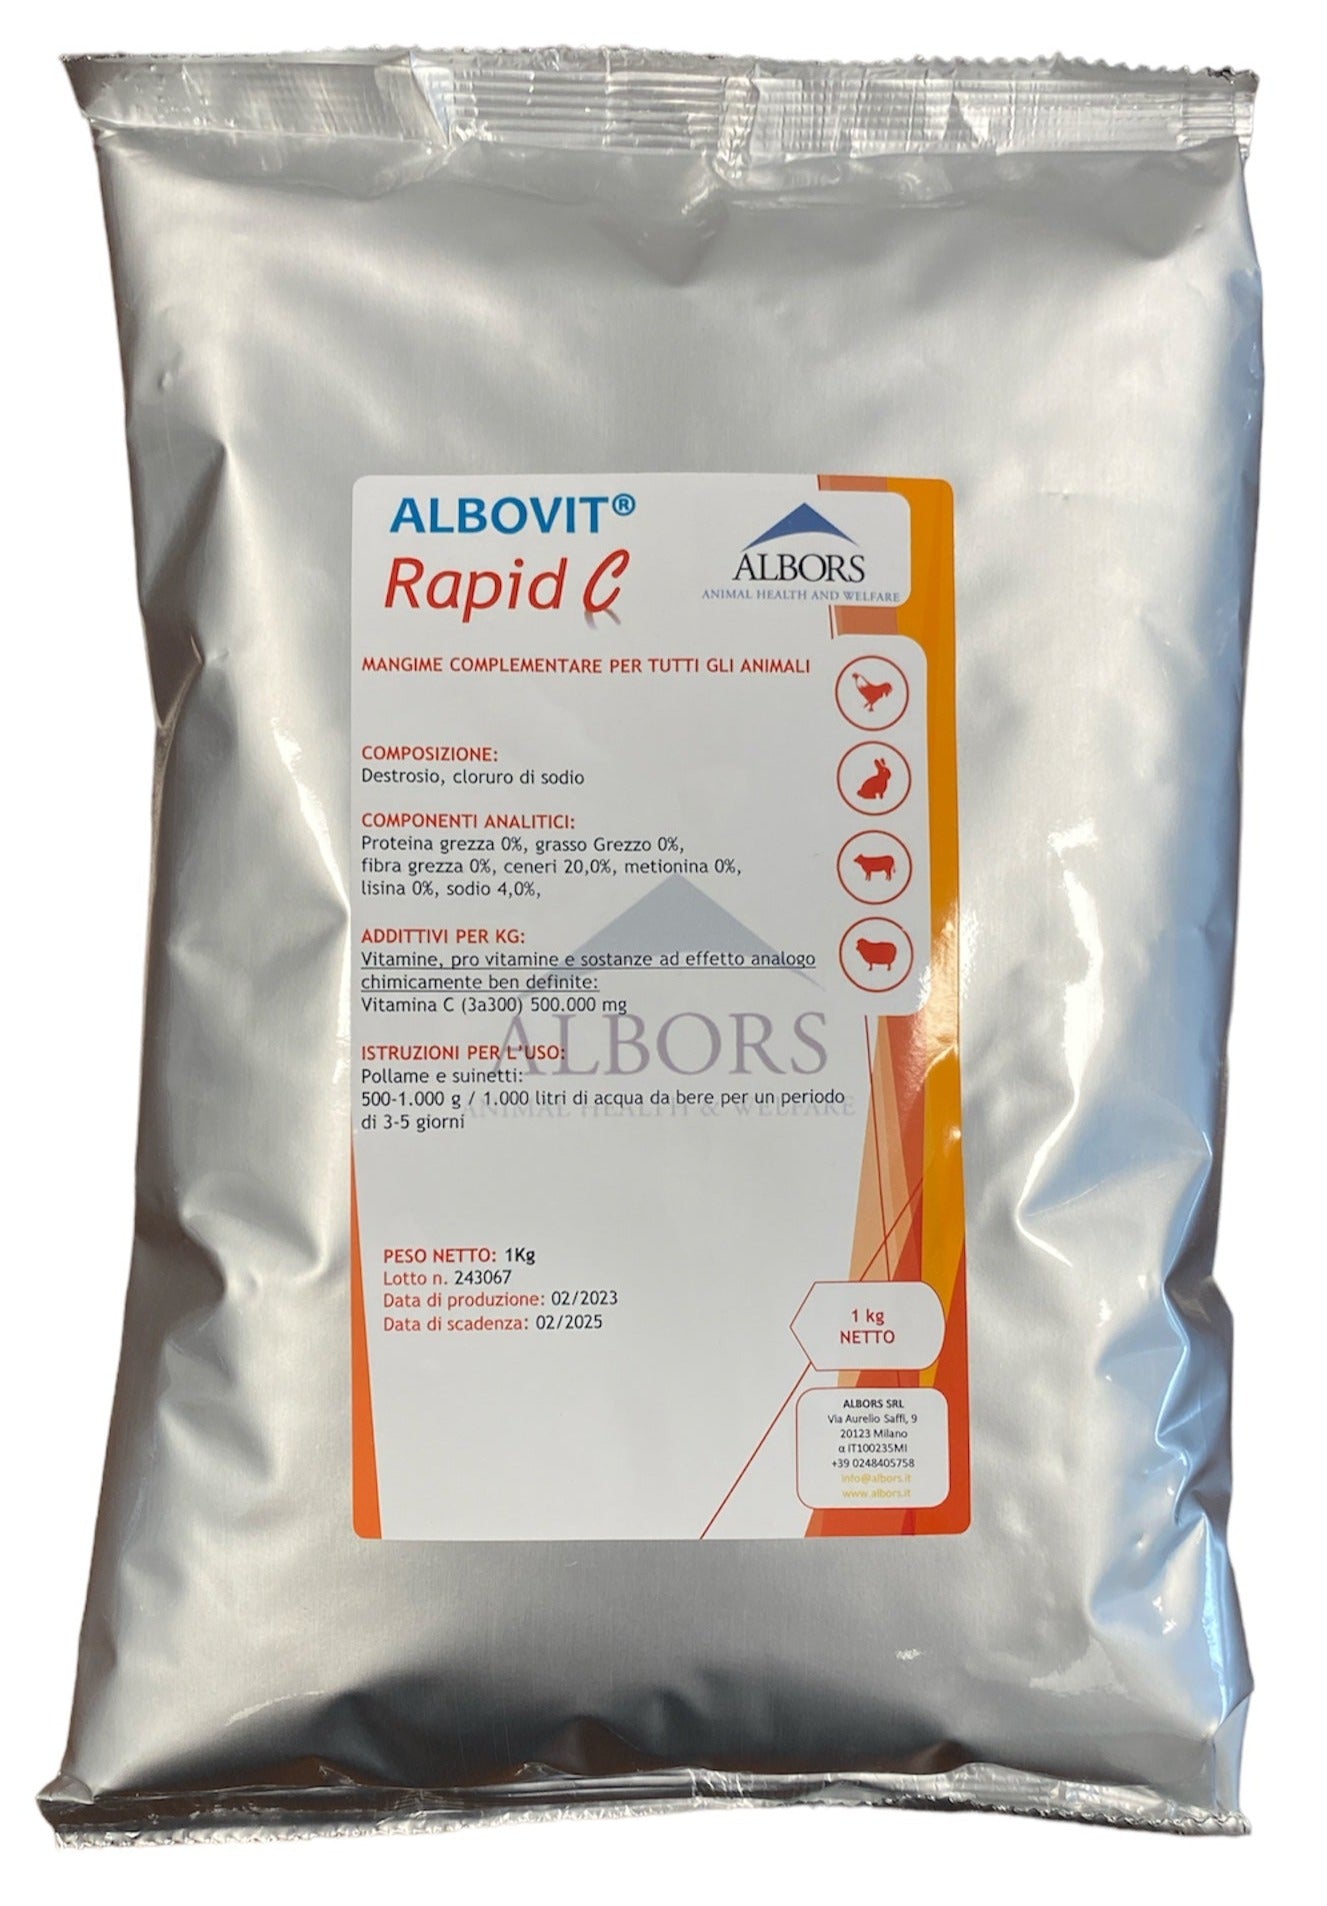 ALBOVIT® Rapid C